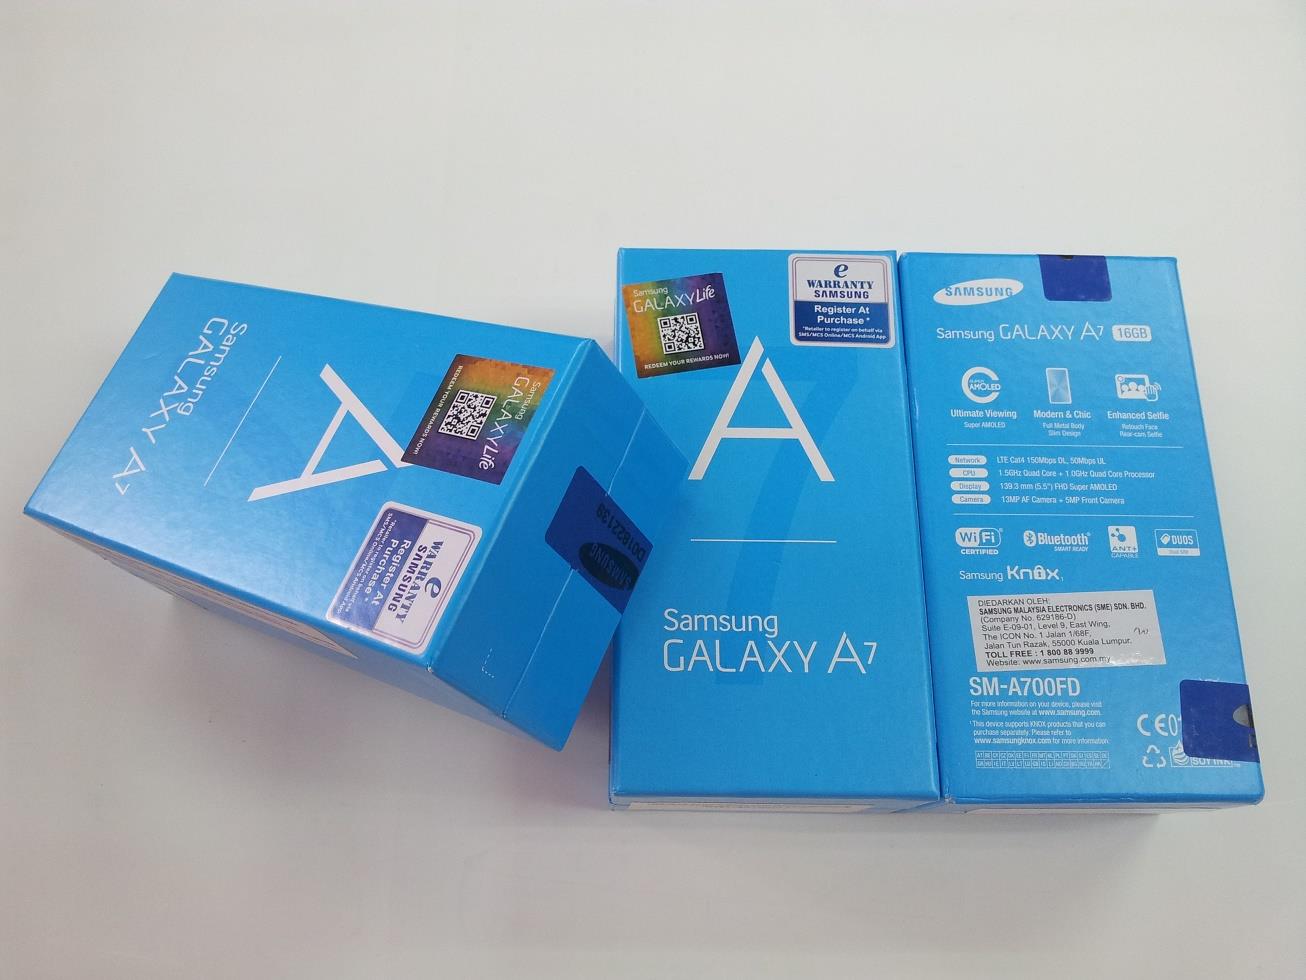 صور و مقومات هاتف سامنج غالاكسي الجديد Samsung galaxy A7